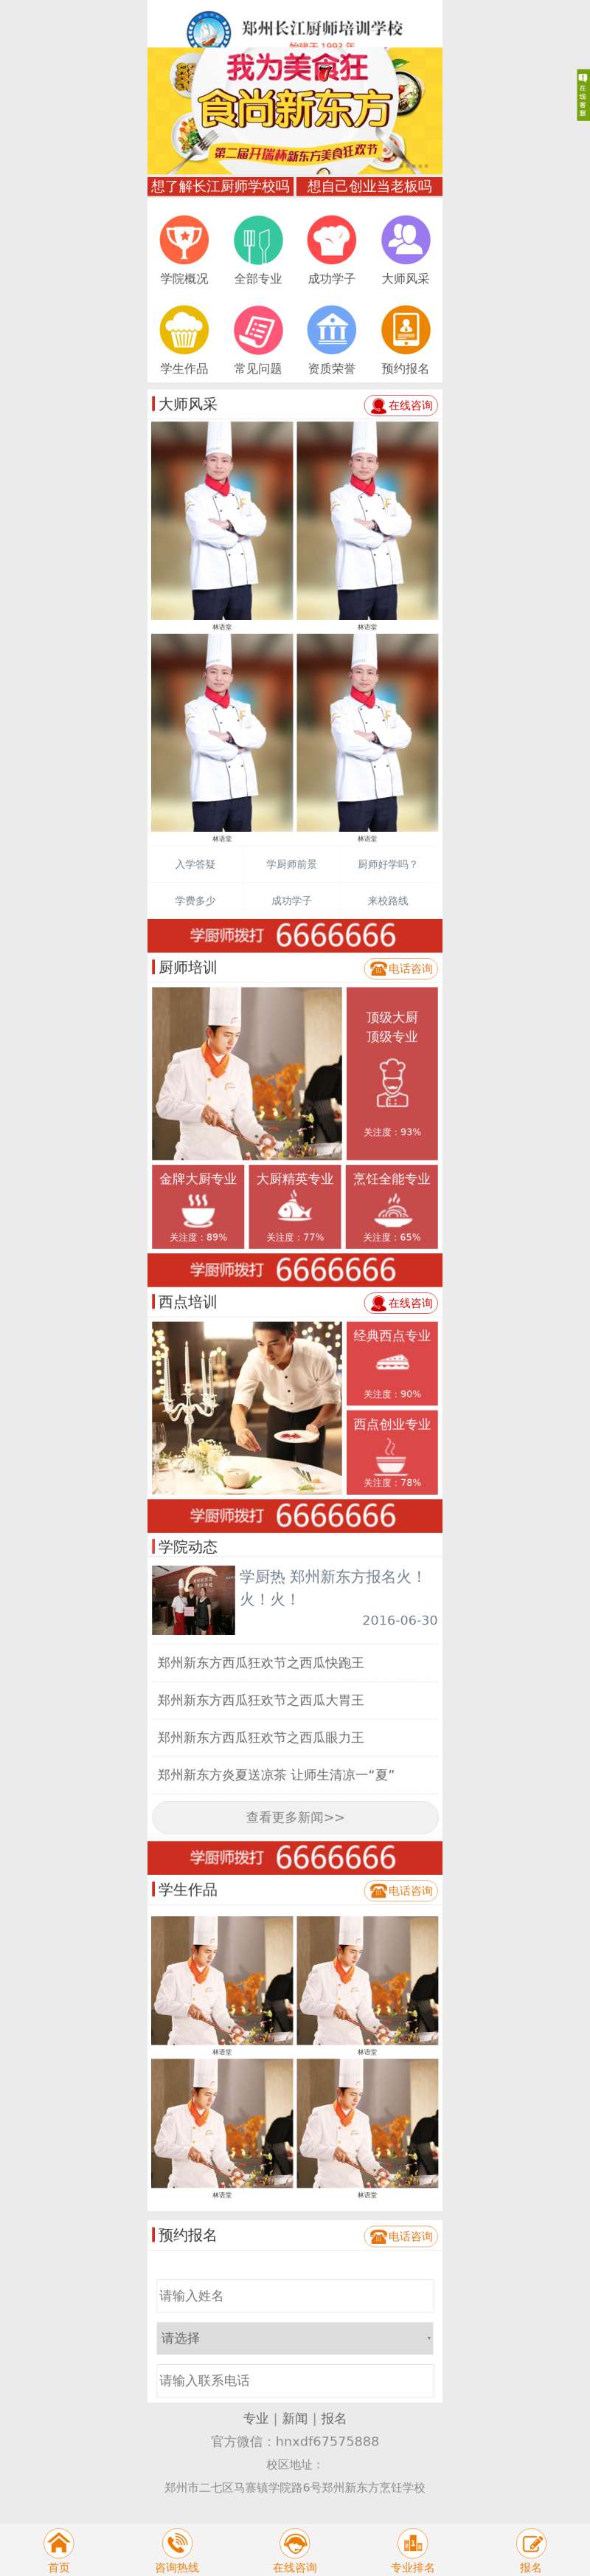 厨师培训学校手机微信页面模板